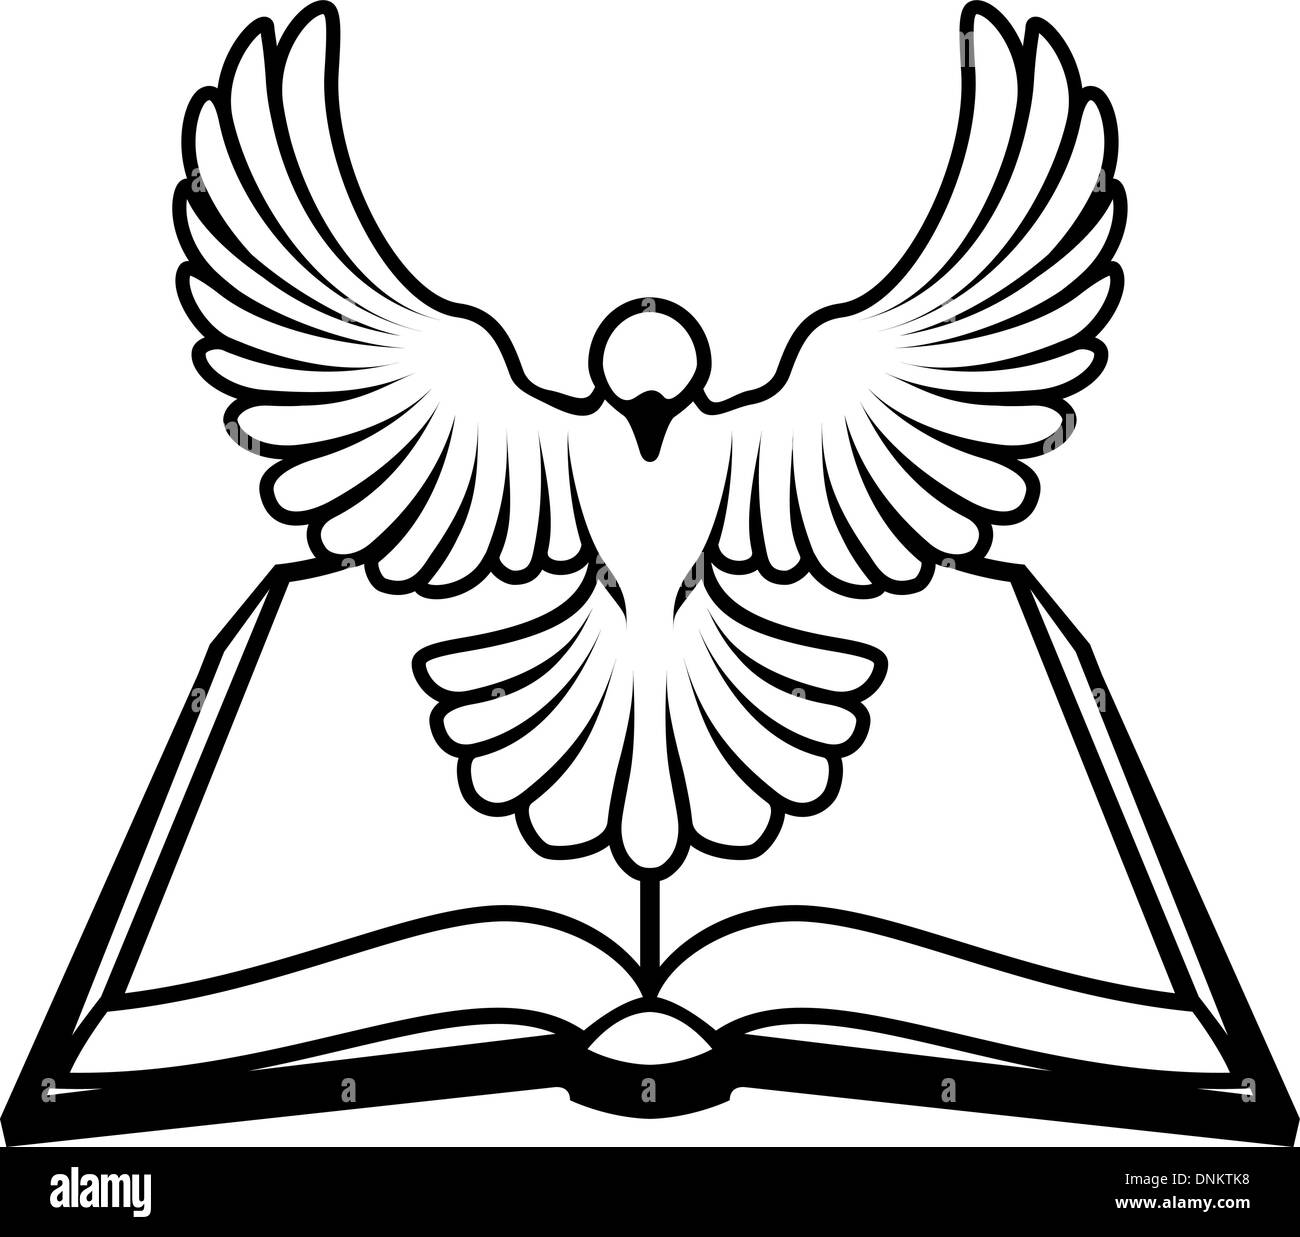 Une Bible chrétienne dove concept, avec une colombe blanche représentant le saint Esprit voler hors de la bible. Pourrait désigner sans erreurs Illustration de Vecteur